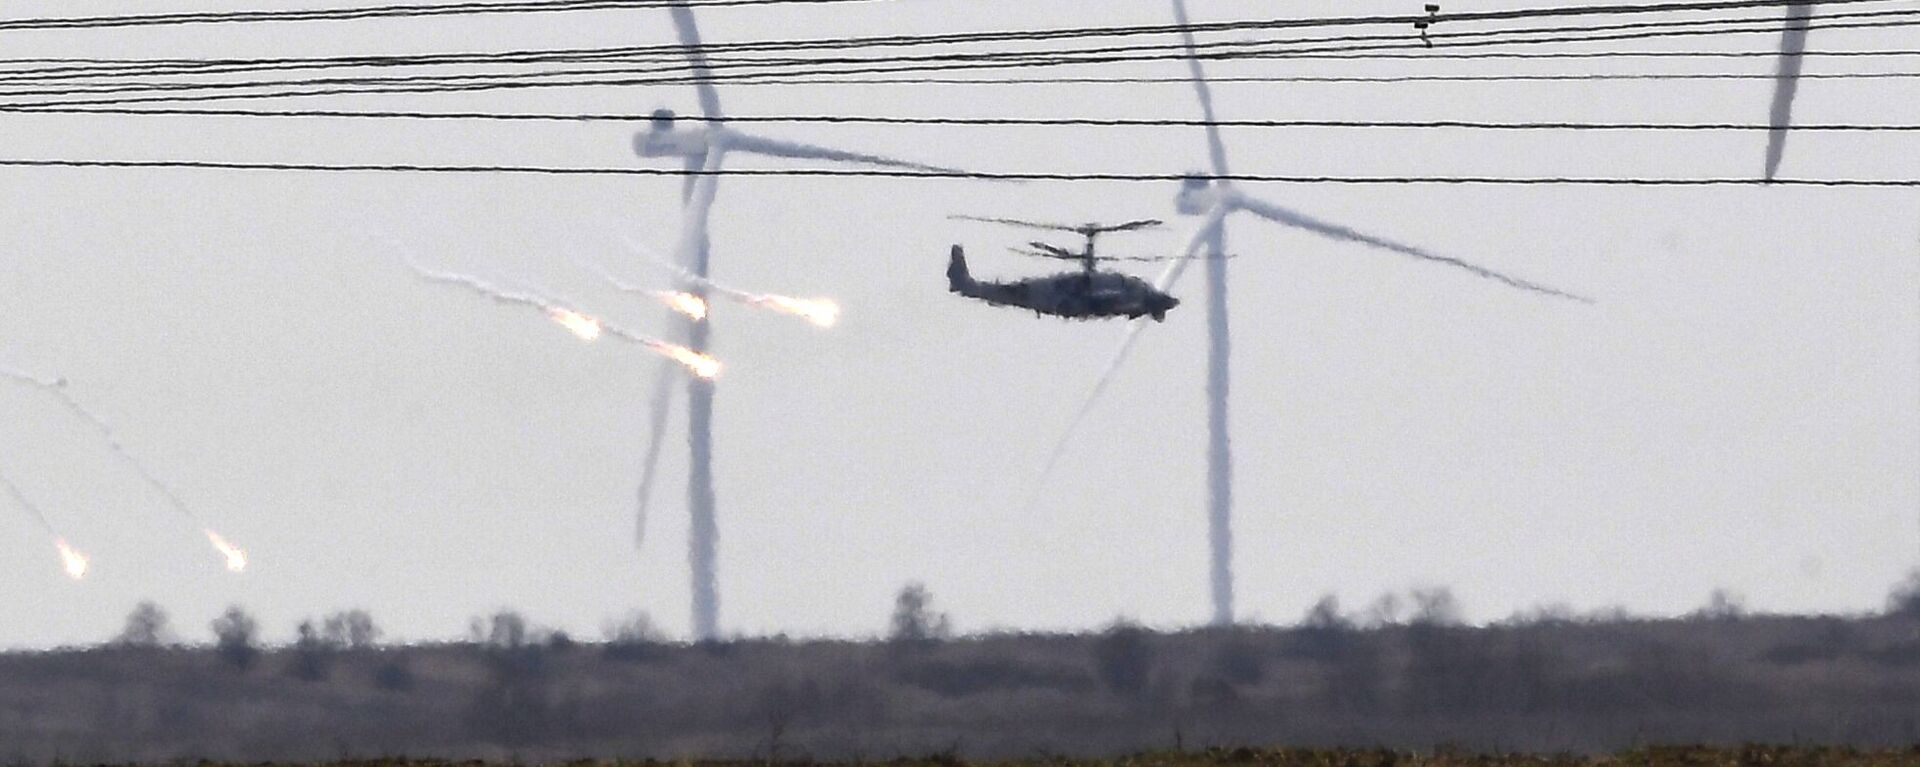 Вертолет Ка-52М около колонны военной техники ВС РФ в Армянске - Sputnik Србија, 1920, 22.06.2022